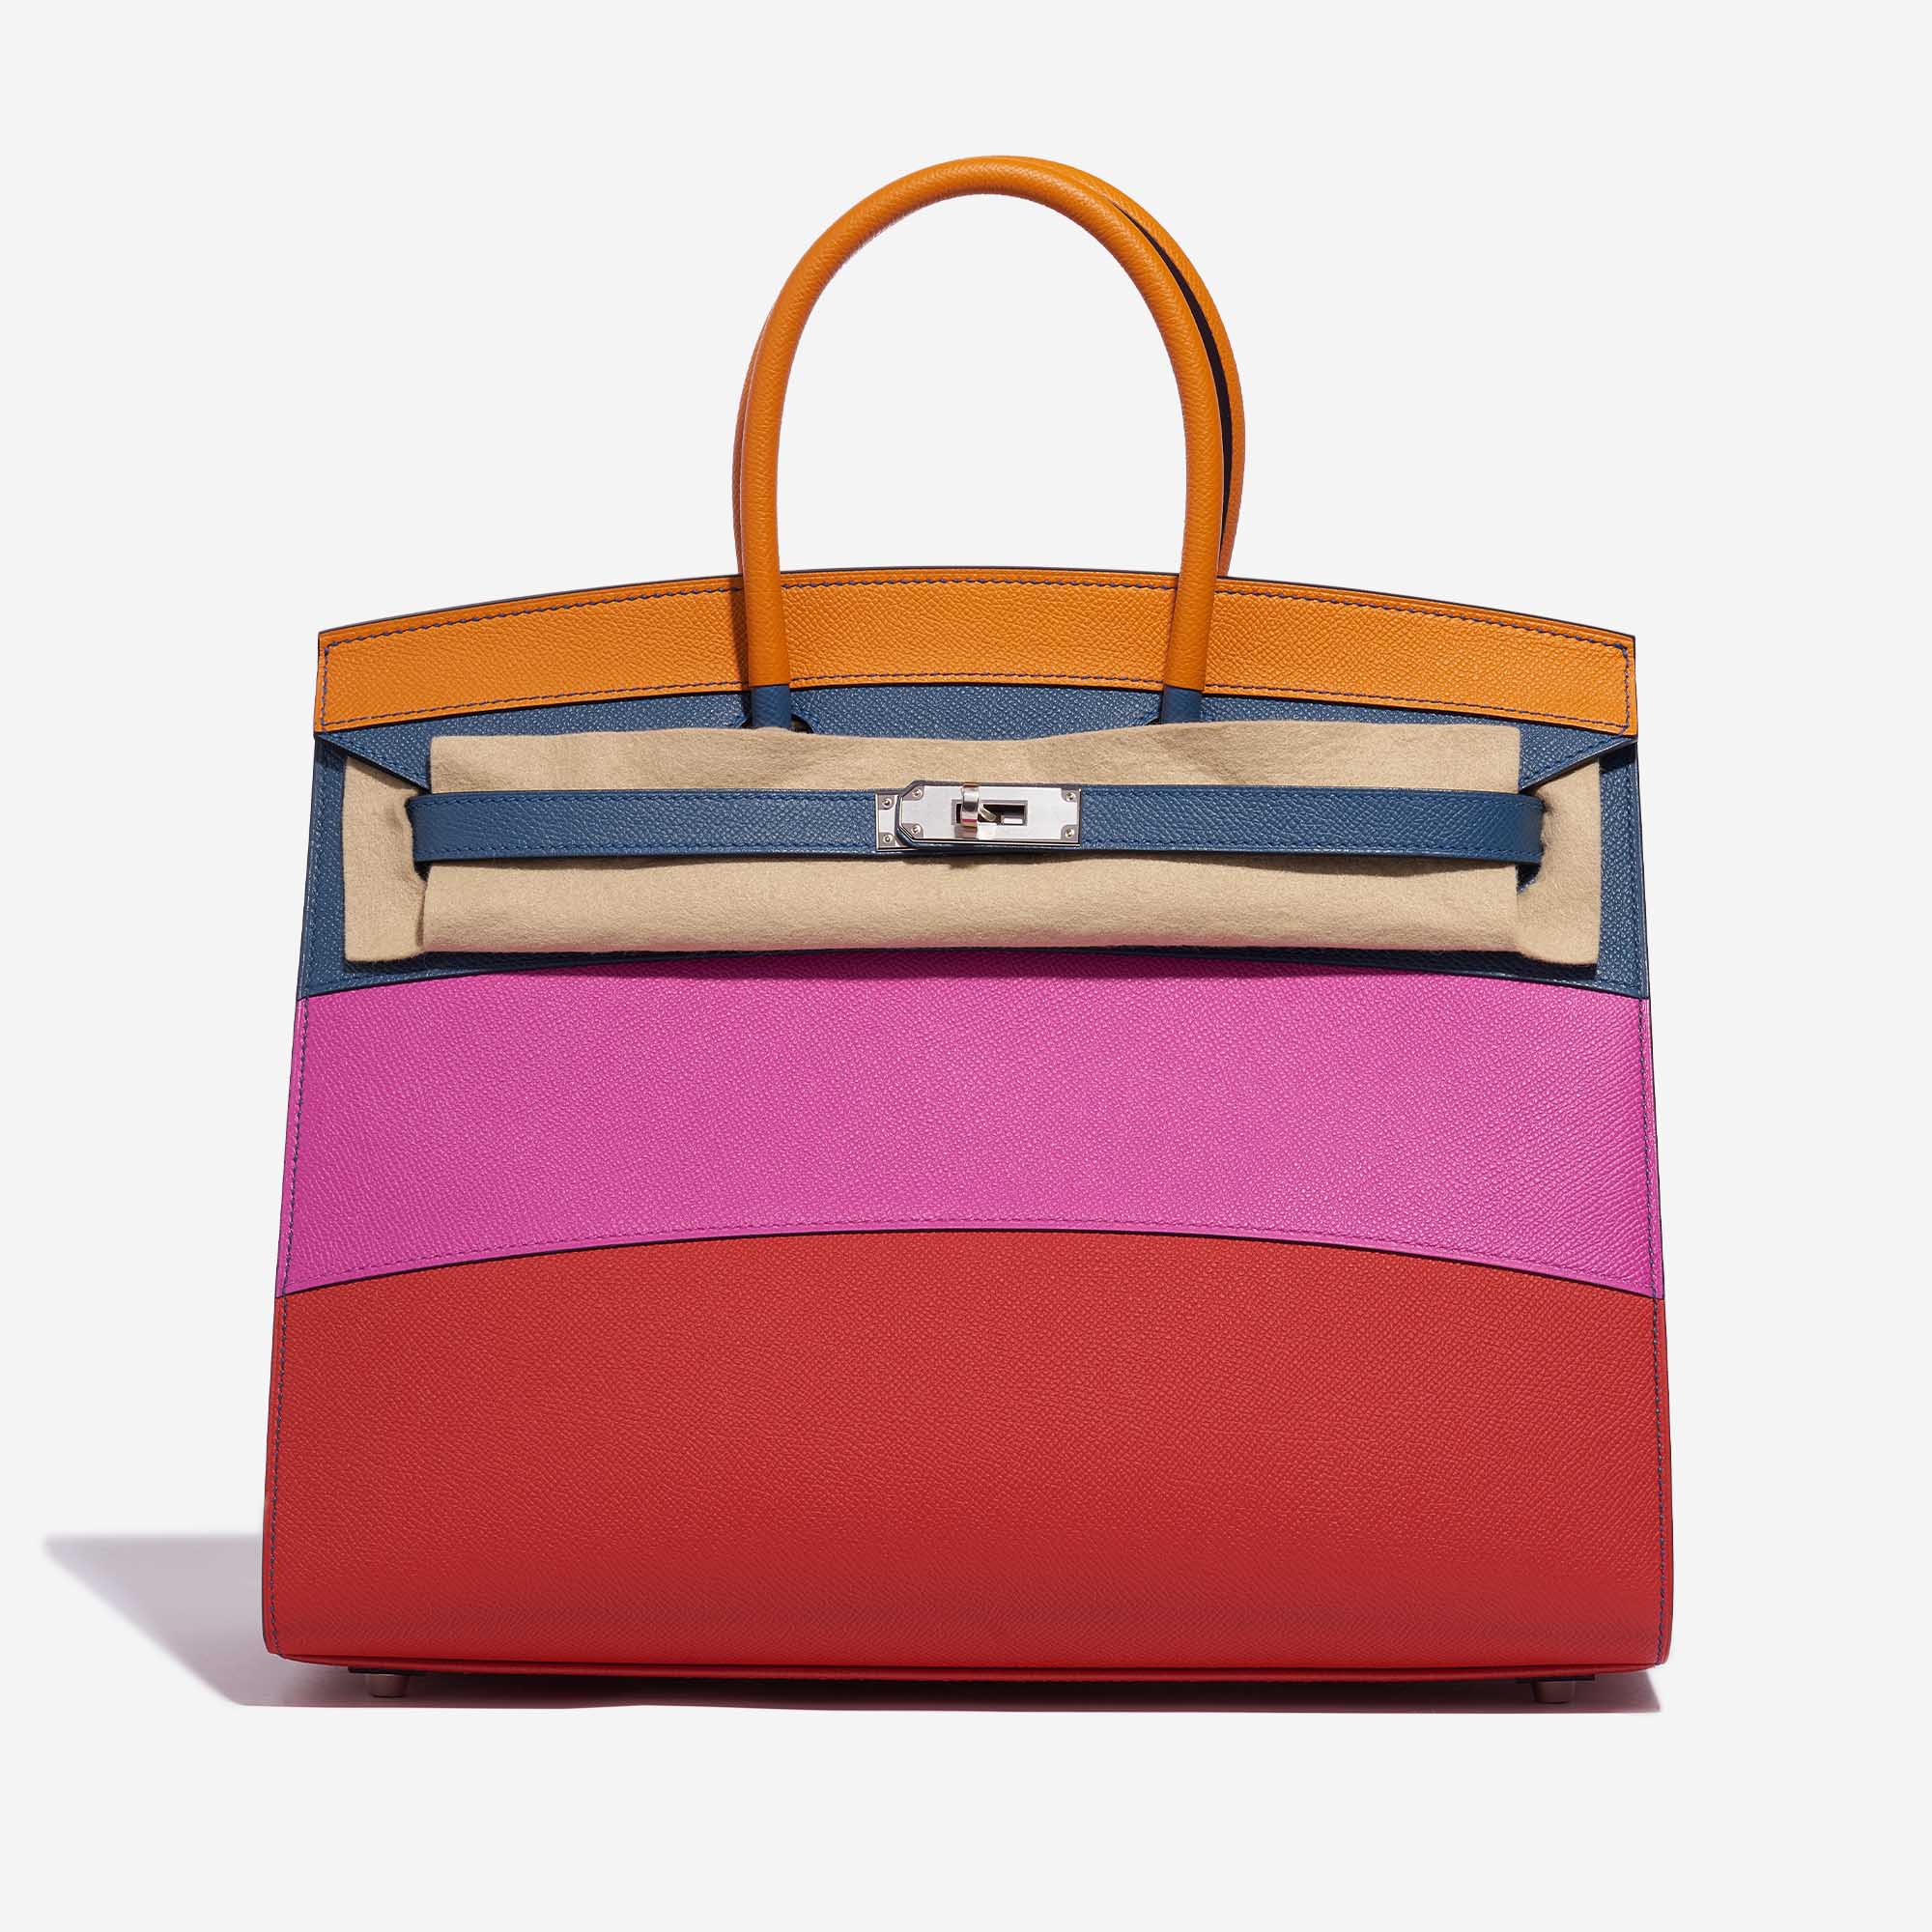 Gebrauchte Hermès Tasche Birkin 35 Sunset Rainbow Epsom Apricot / Blue Achat / Magnolia / Rouge Casaque Multicolour Front Velt | Verkaufen Sie Ihre Designer-Tasche auf Saclab.com